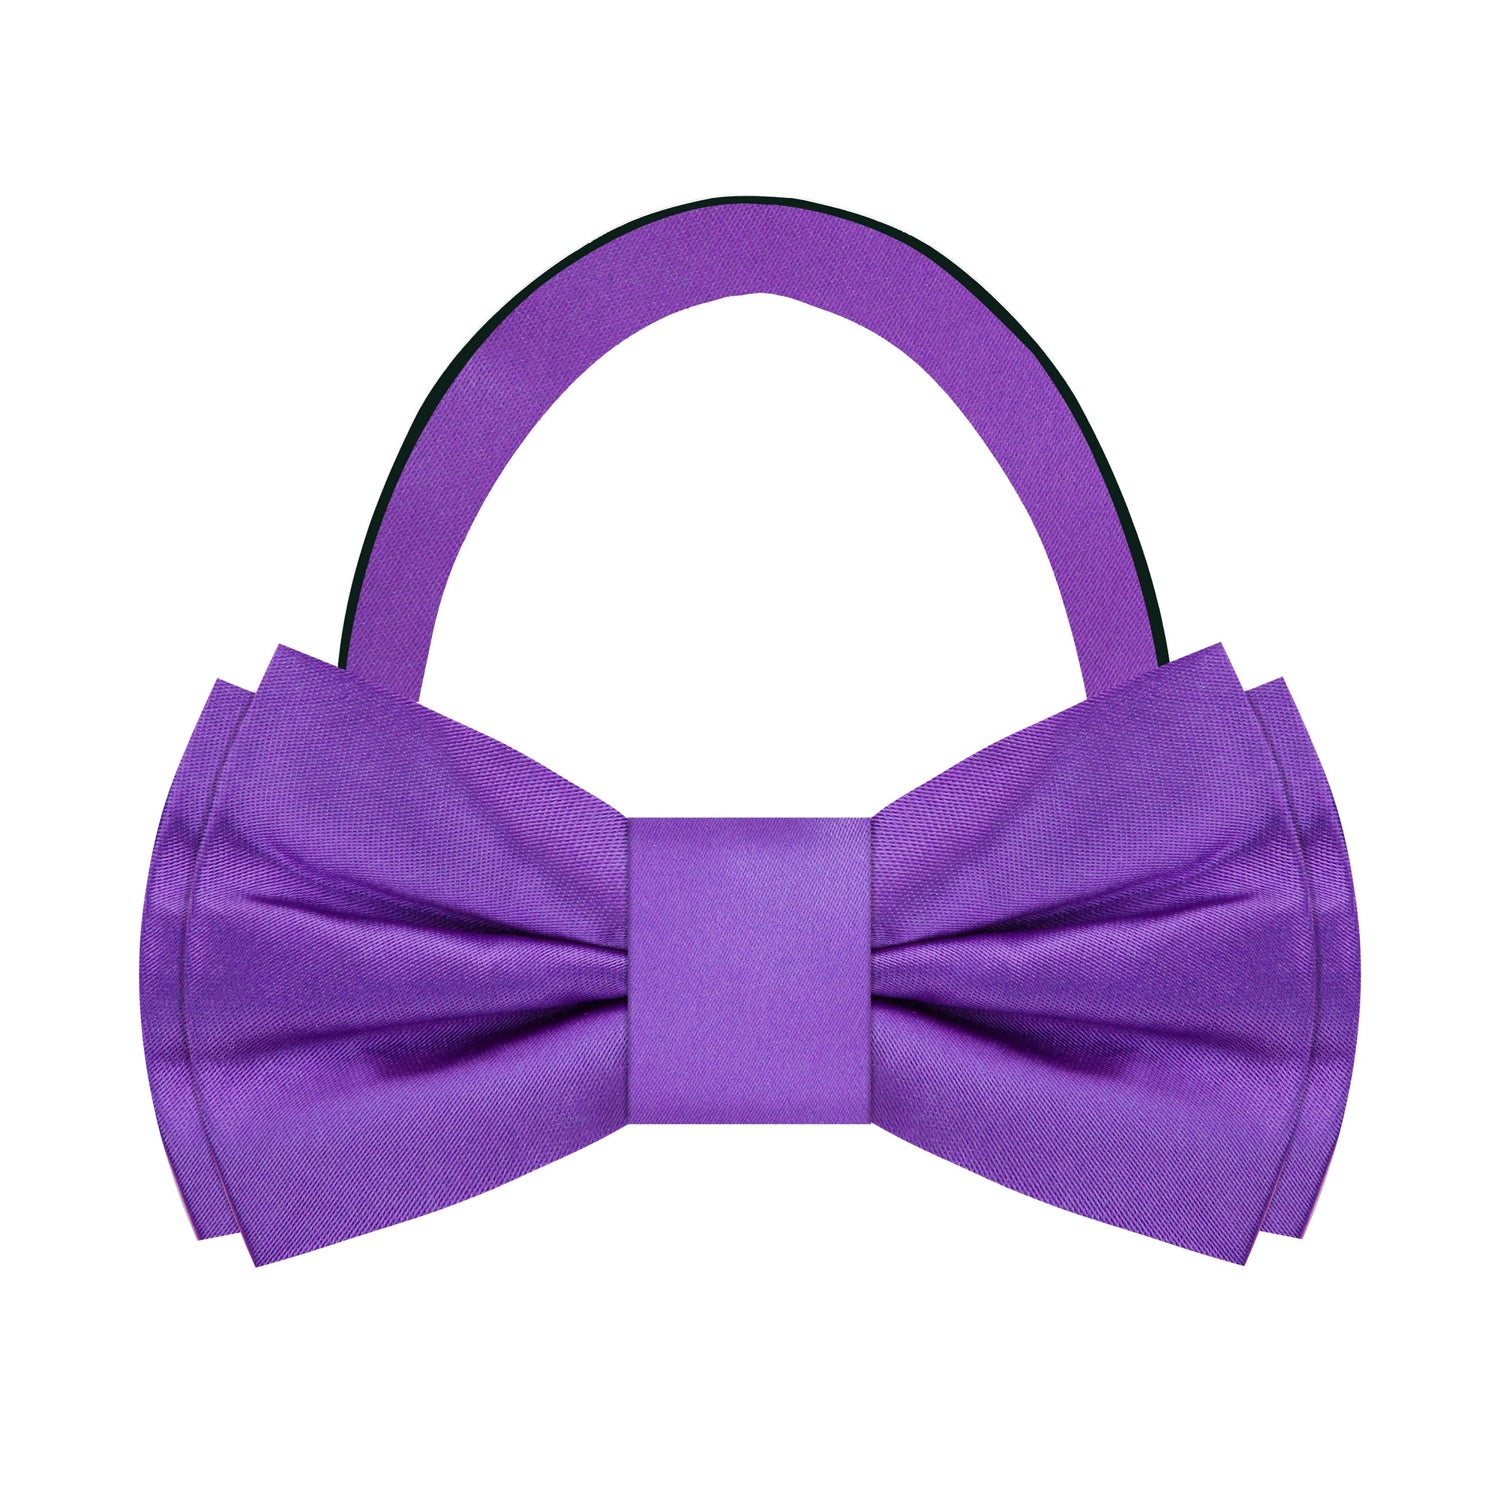 Solid Purple Bow Tie Pre Tied